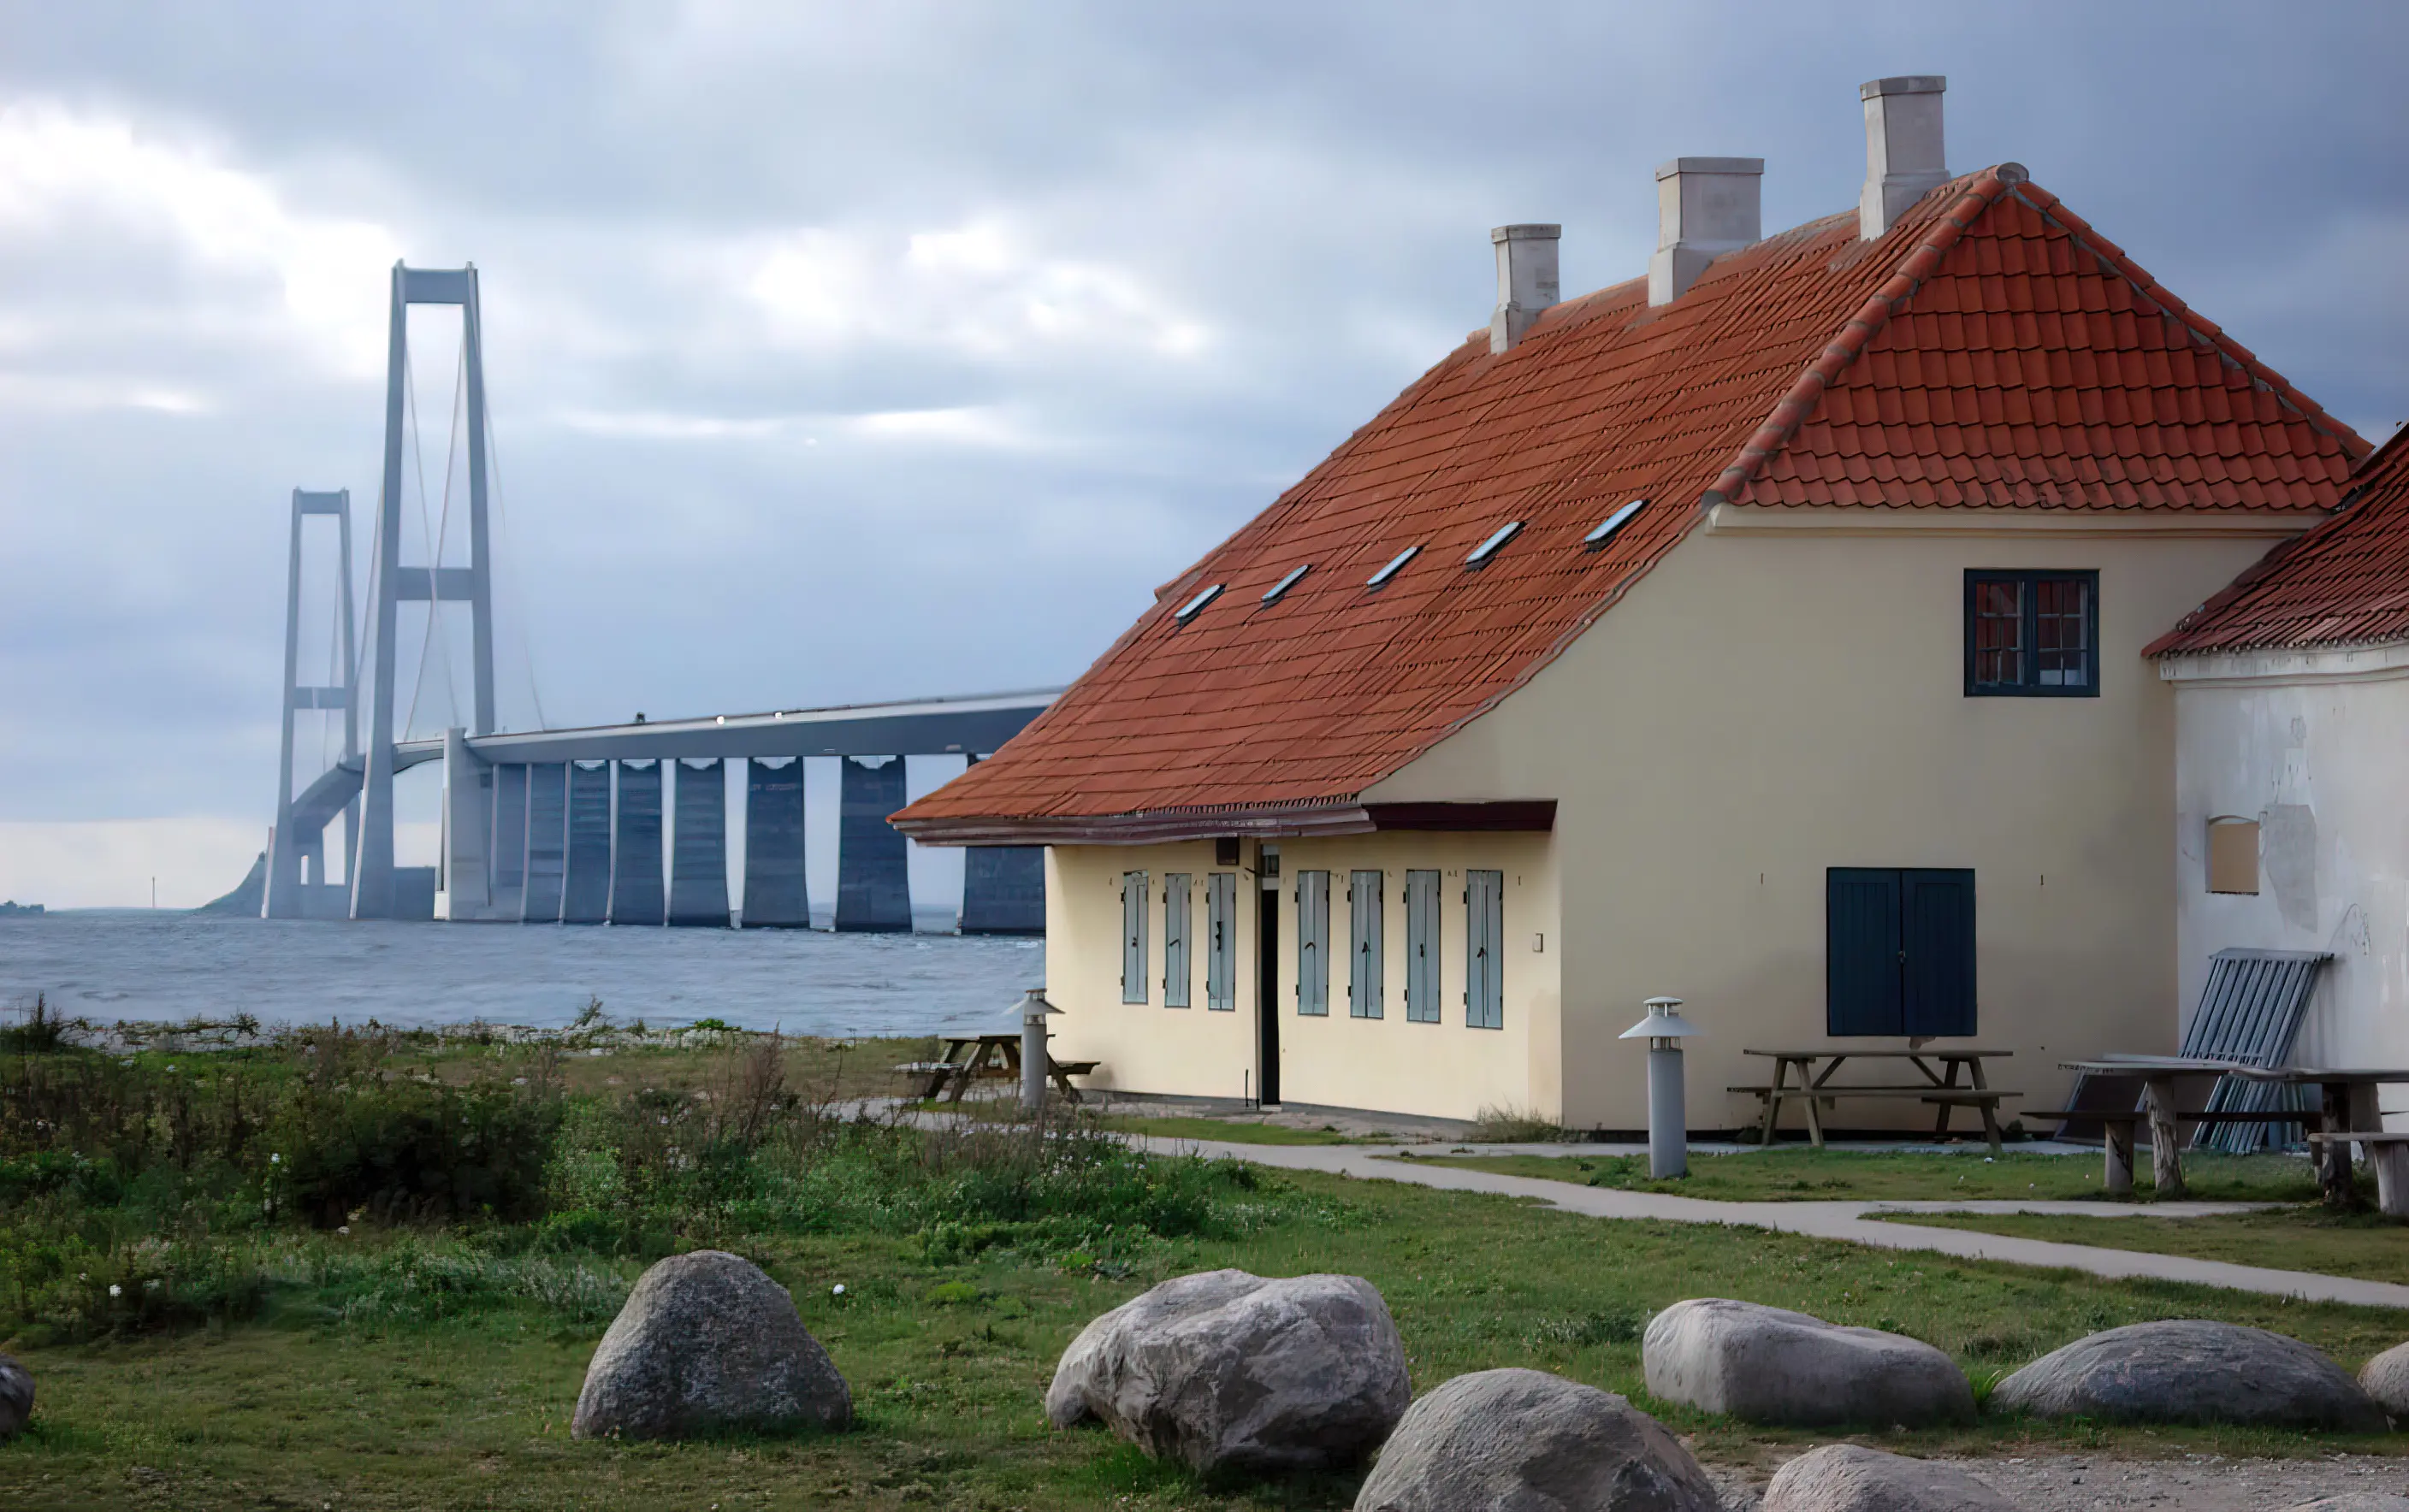 Billede af Halsskov Isbådsstation med Storebæltsbroen i baggrunden.